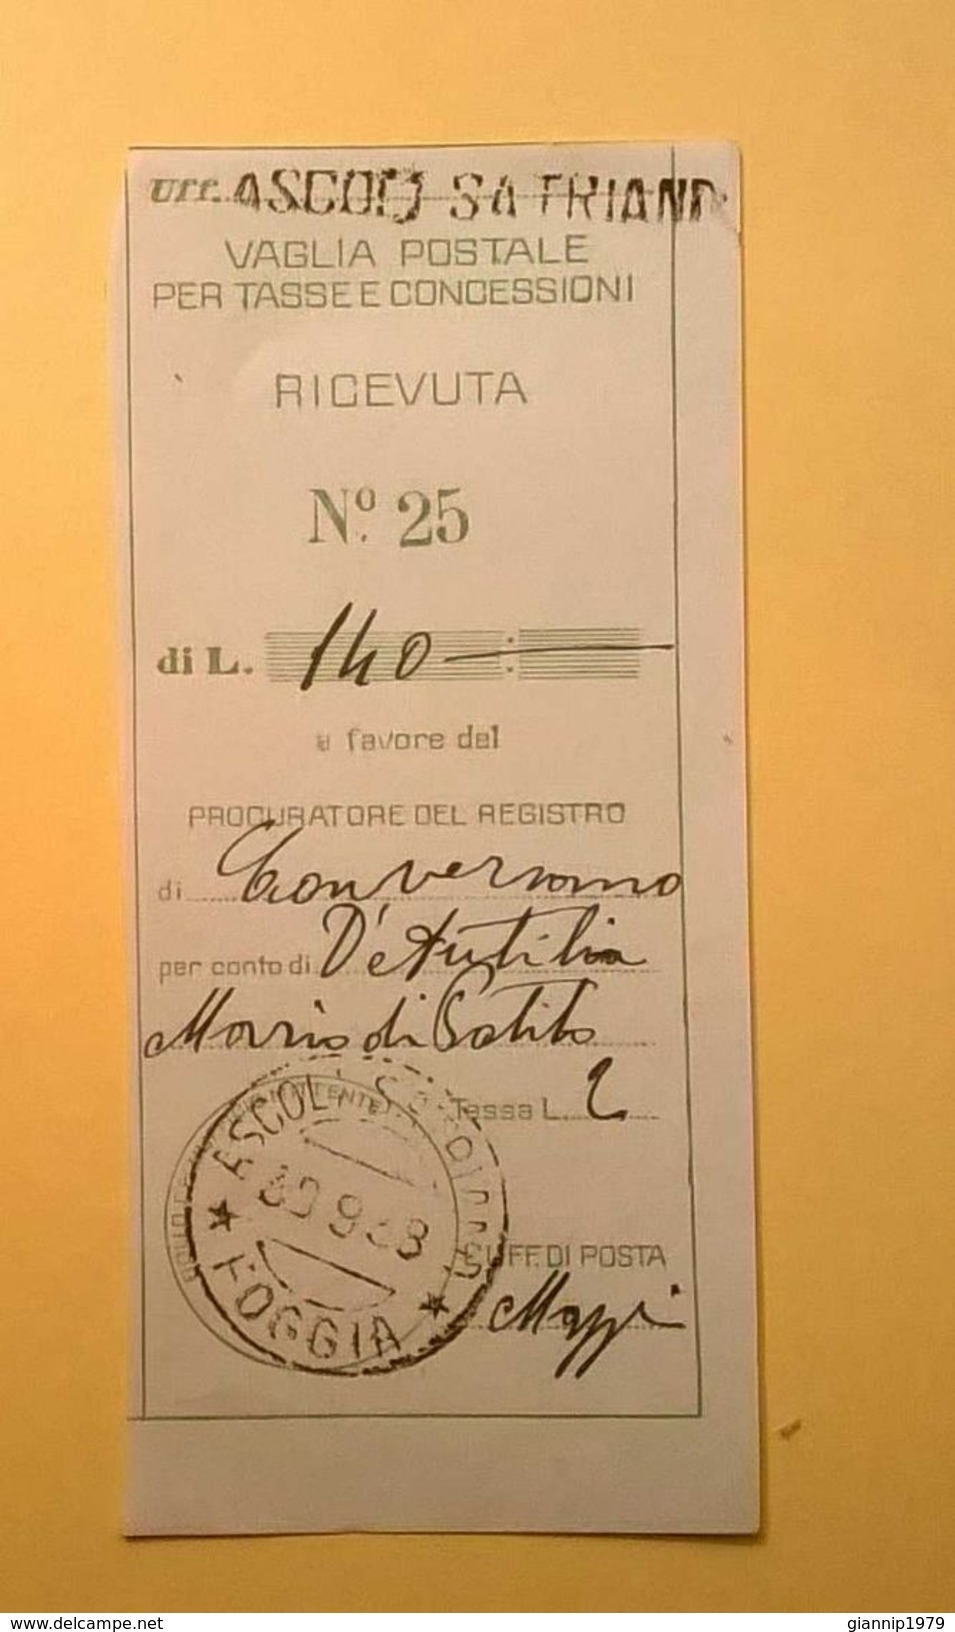 VAGLIA POSTALE RICEVUTA ASCOLI SATRIANO FOGGIA 1938 - Vaglia Postale